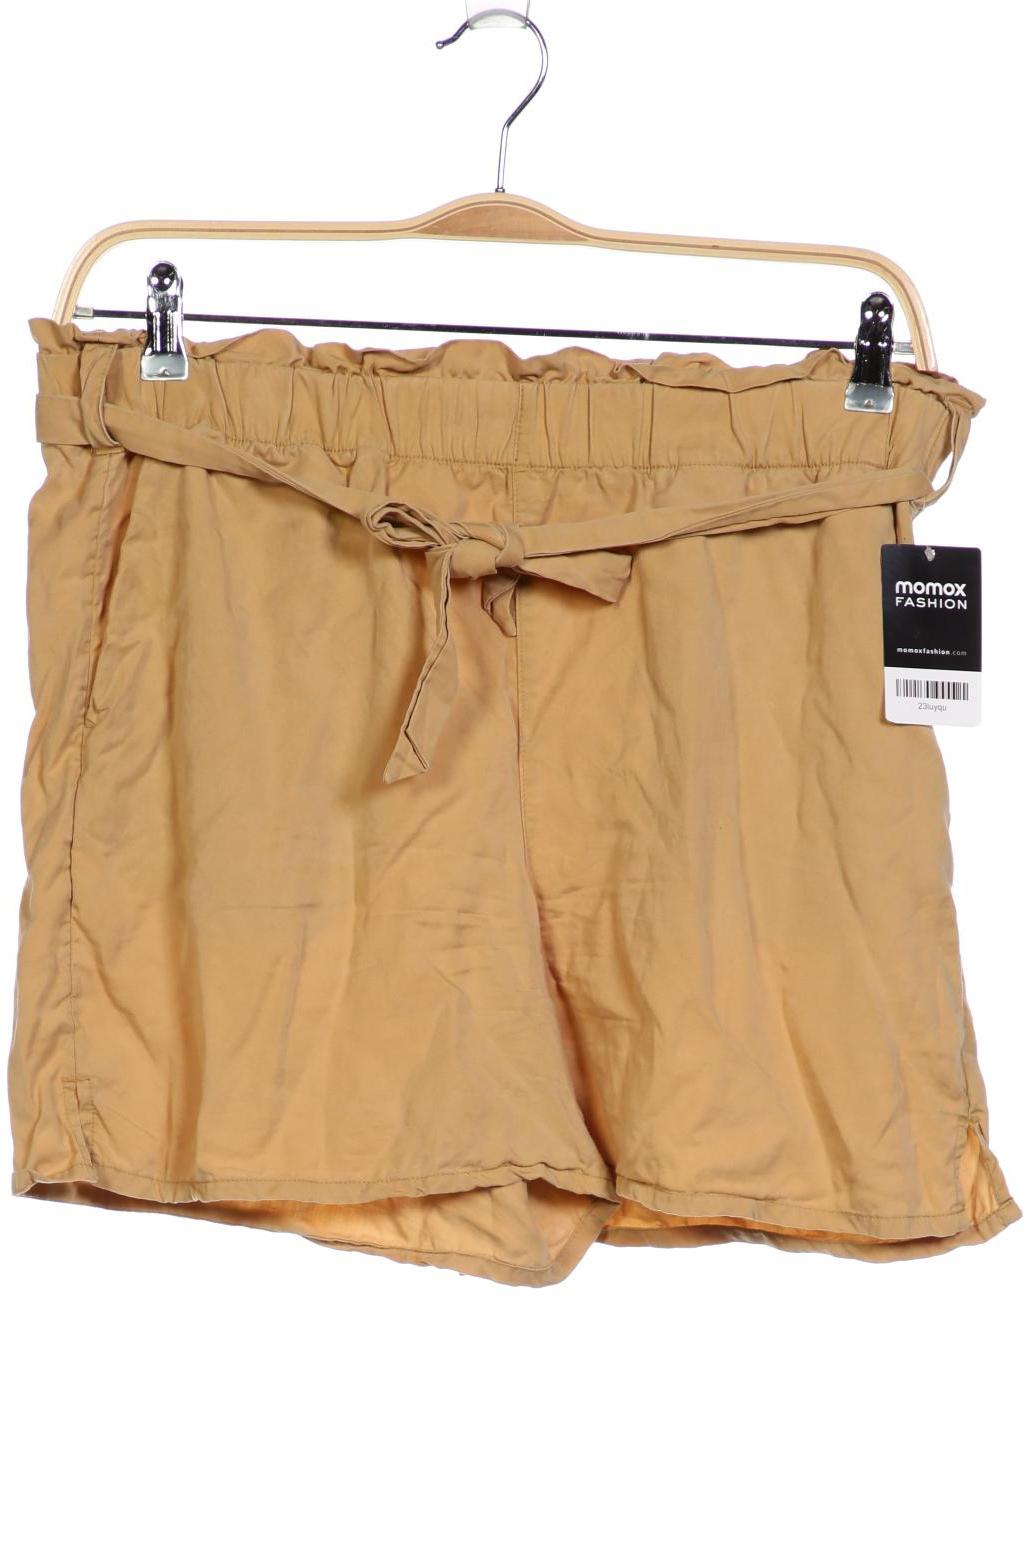 TOM TAILOR Denim Damen Shorts, beige von Tom Tailor Denim